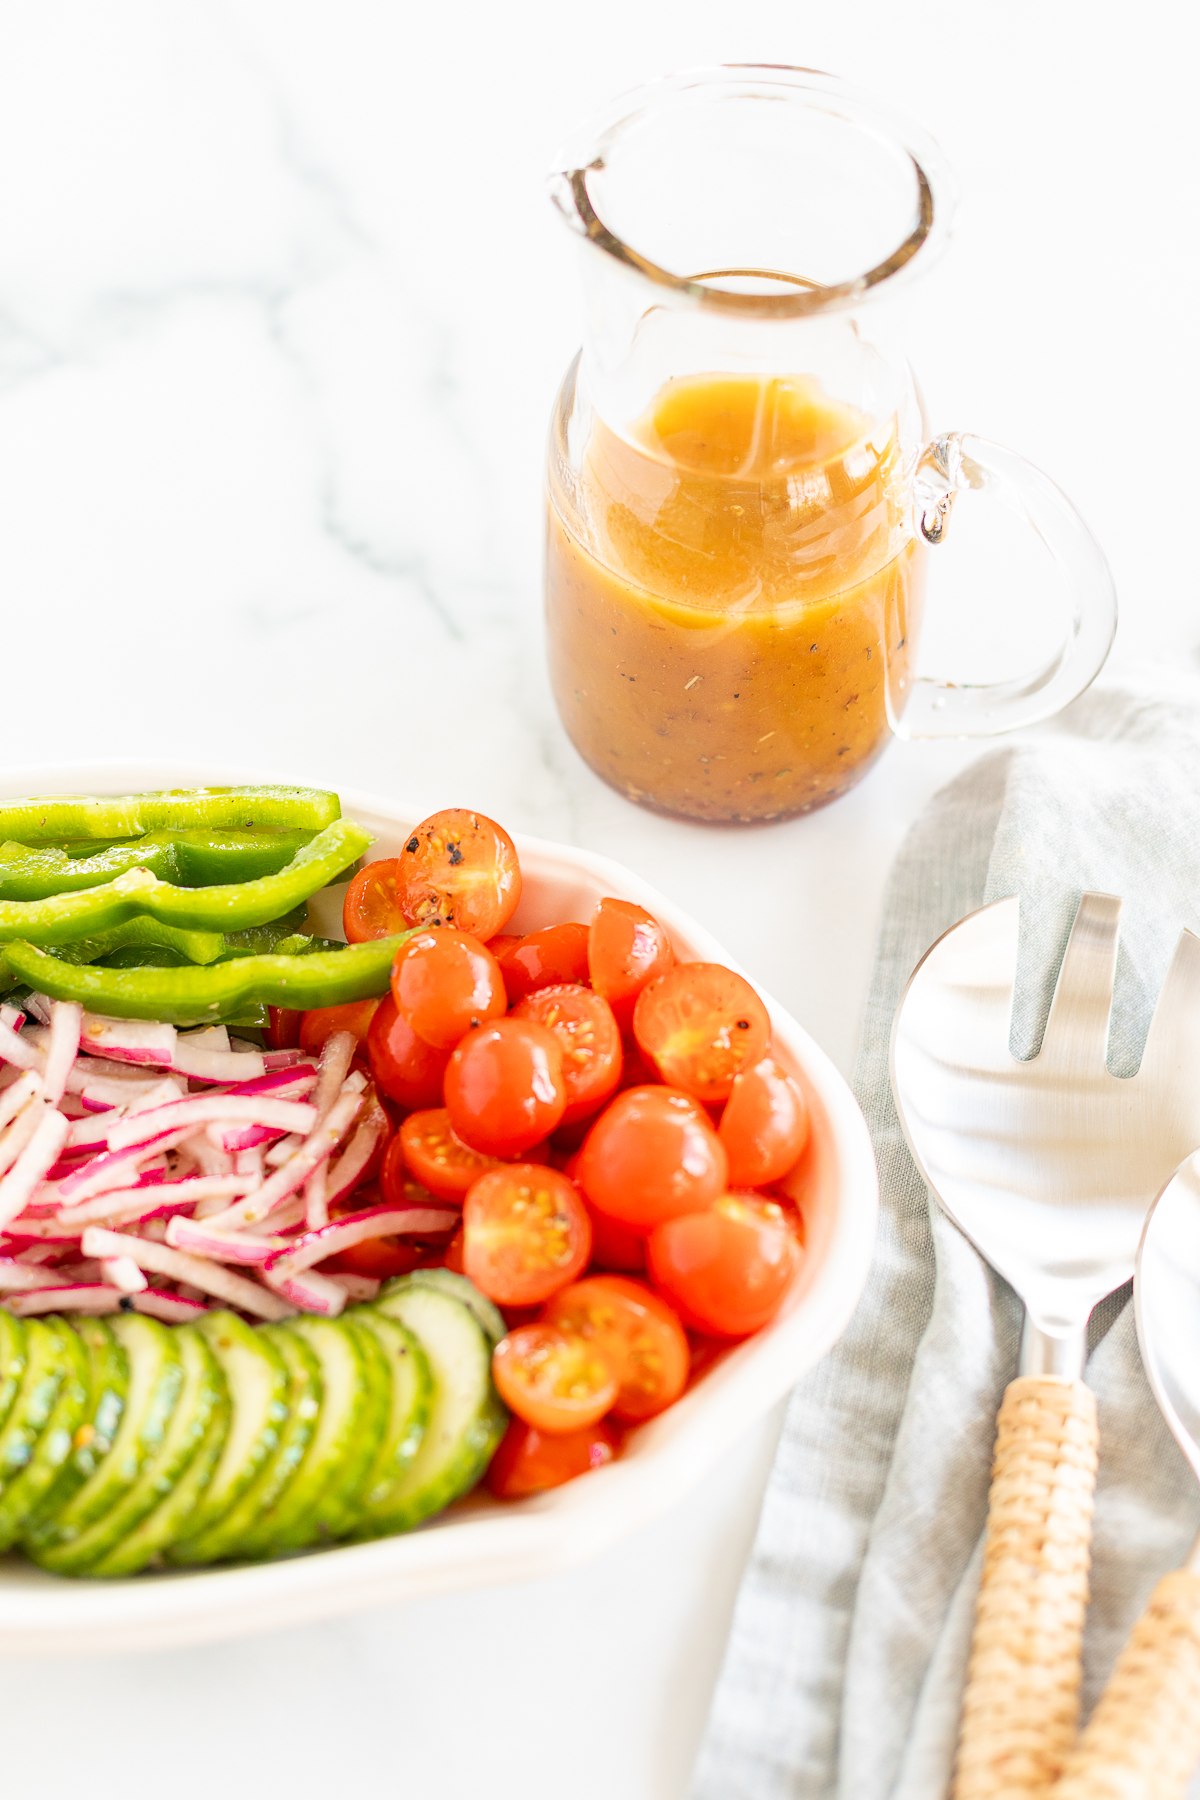 Greek salad vegetables on platter set next to pitcher of red wine vinaigrette and serving utensils